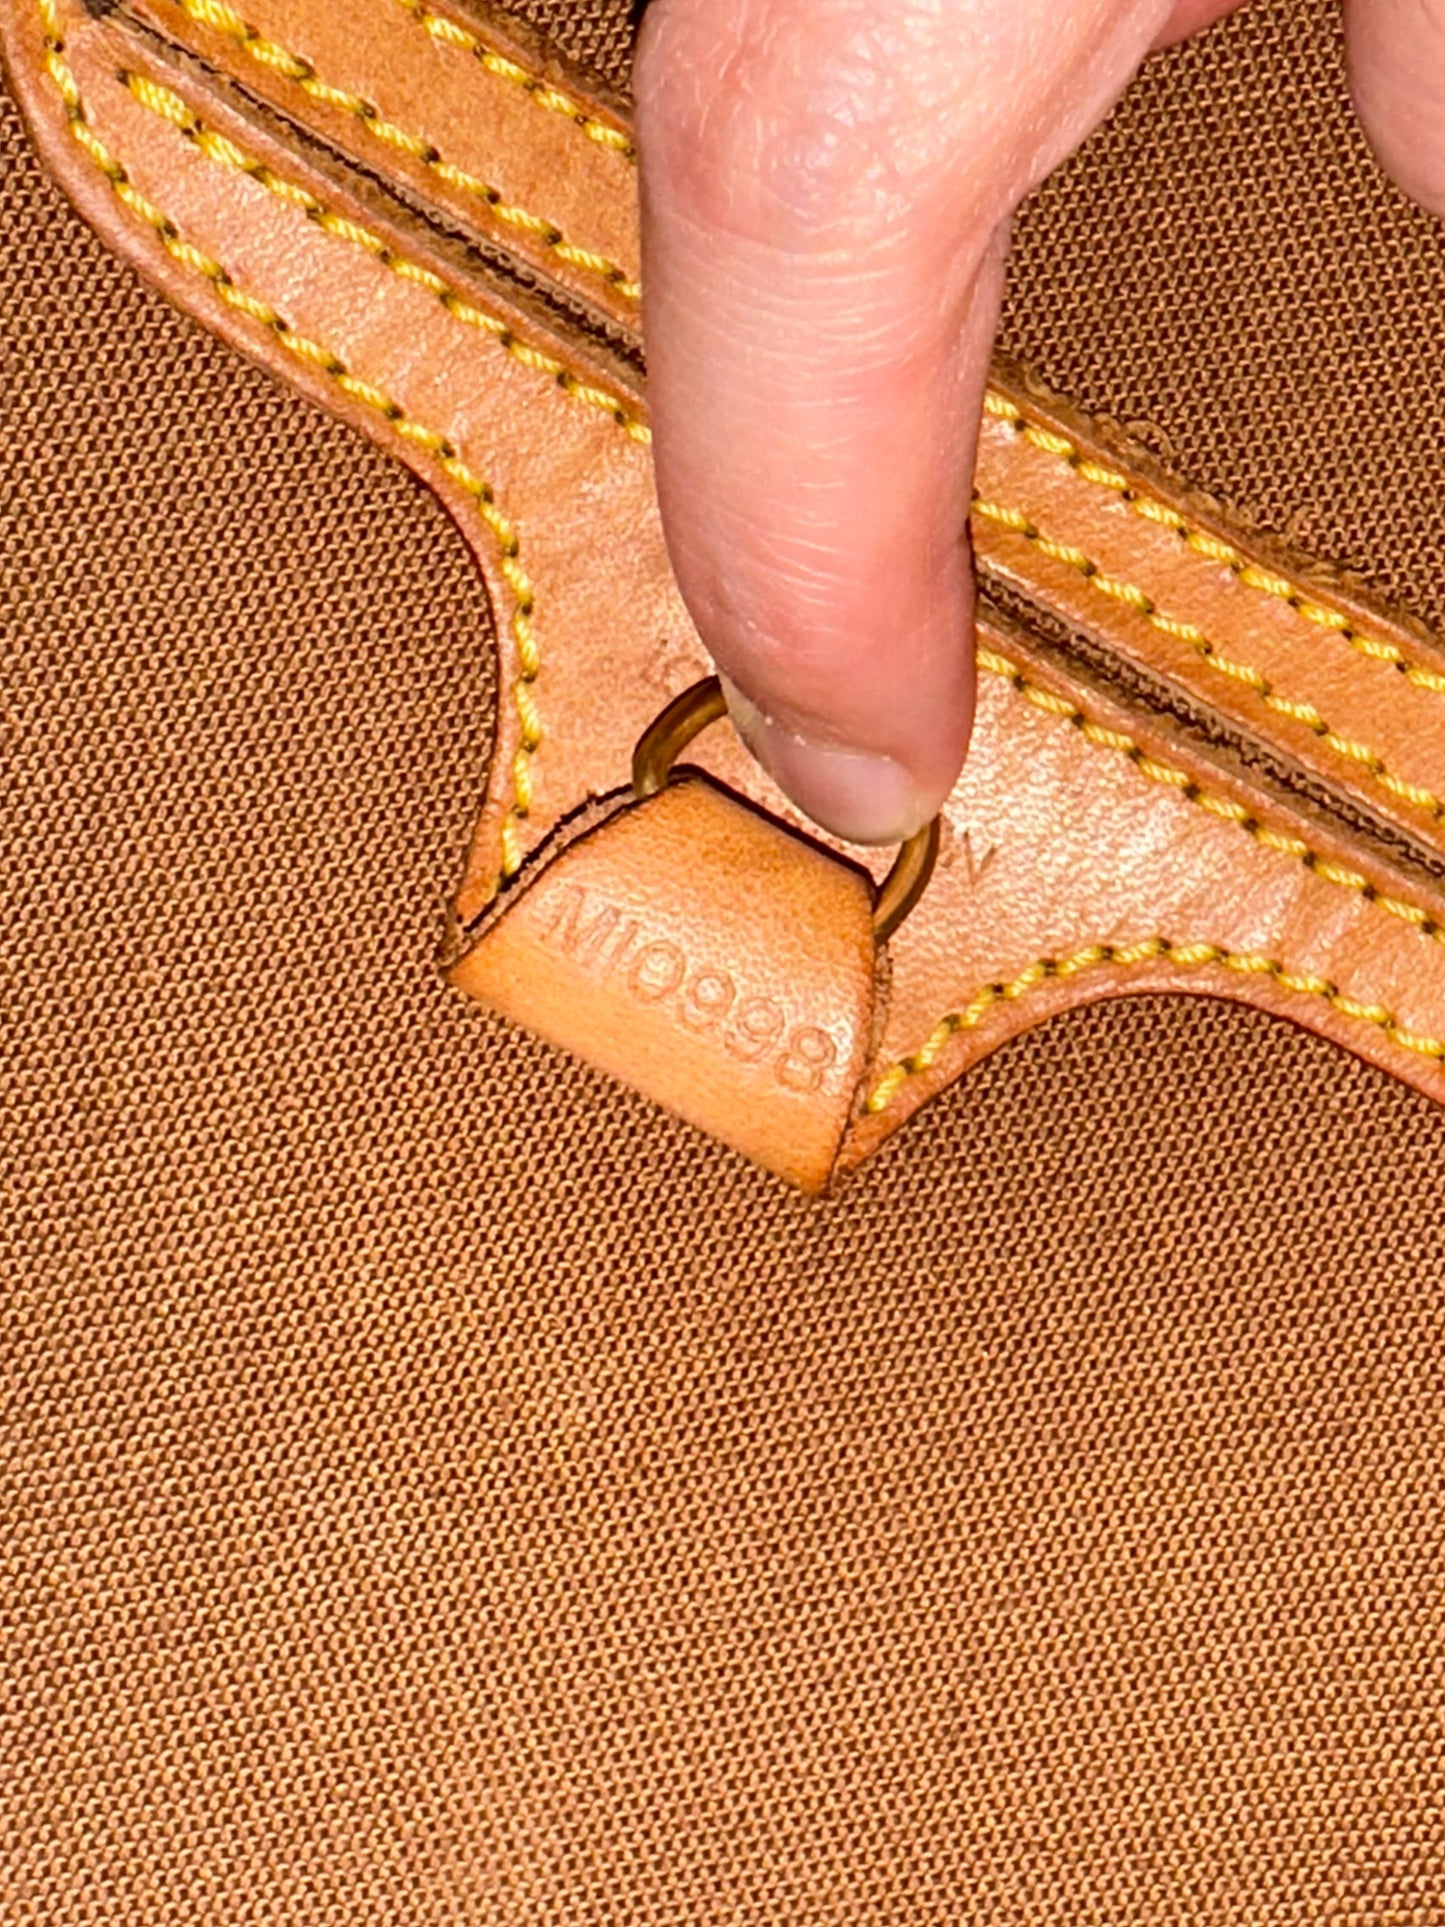 Pre-owned Authentic Louis Vuitton Ellipse PM Monogram Handbag